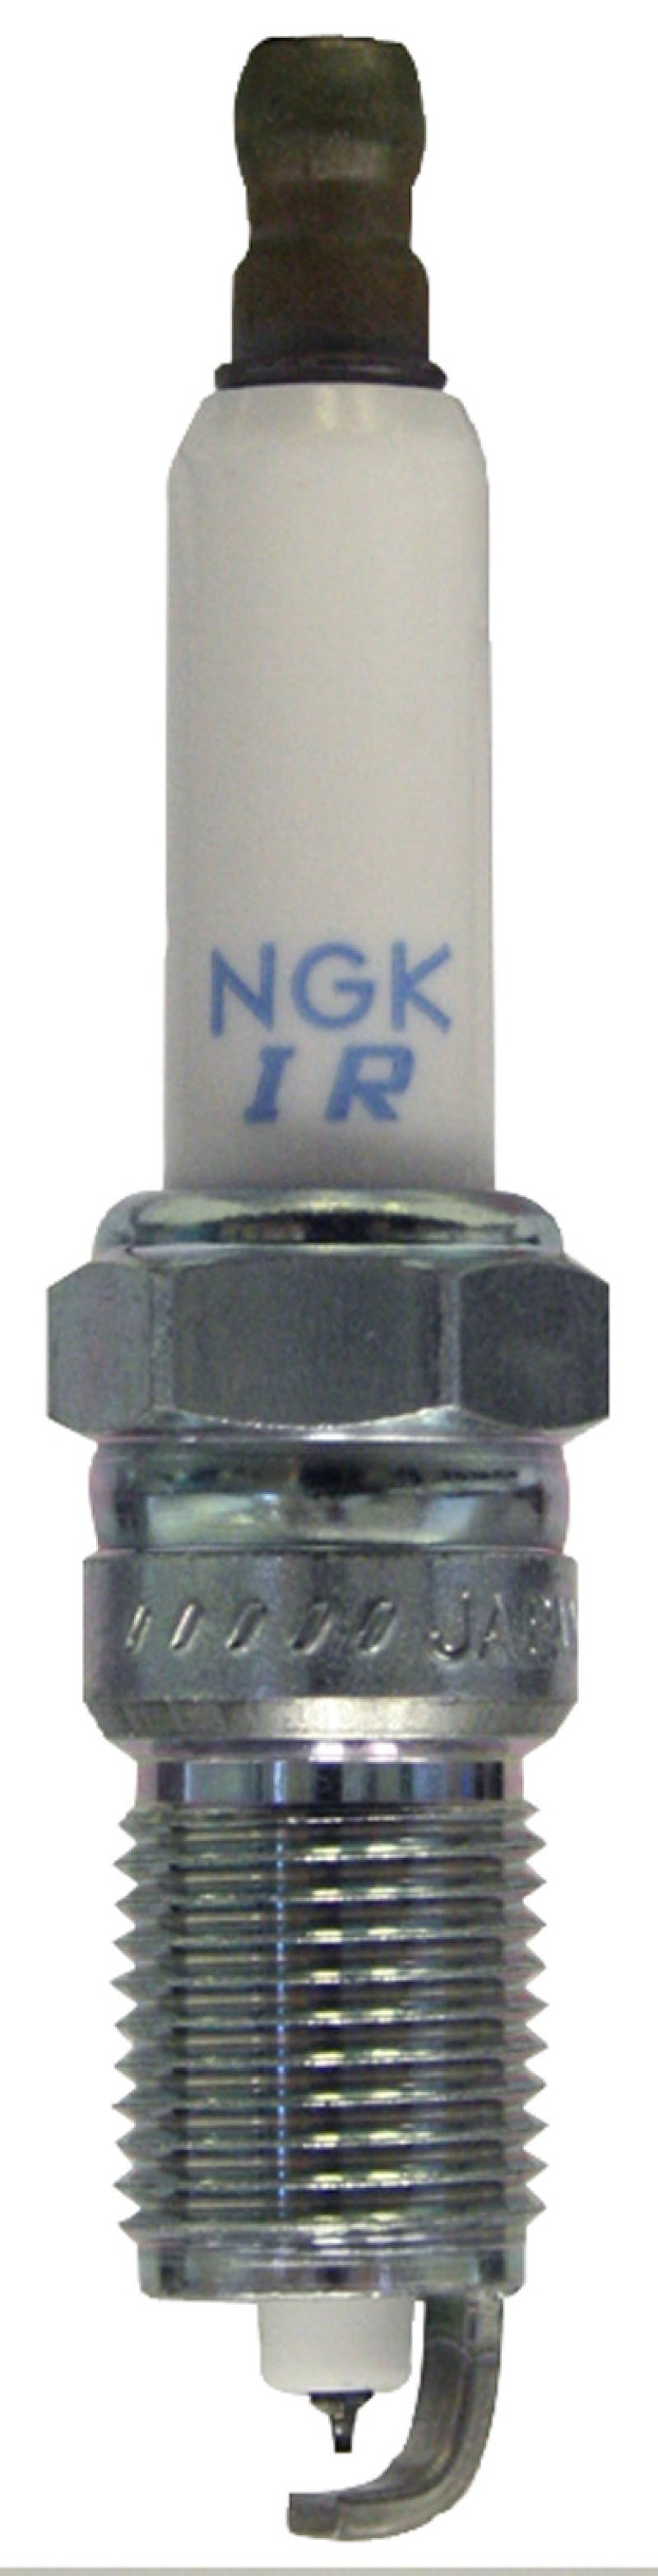 NGK Iridium Spark Plug Box of 4 (IZTR5B11) - eliteracefab.com